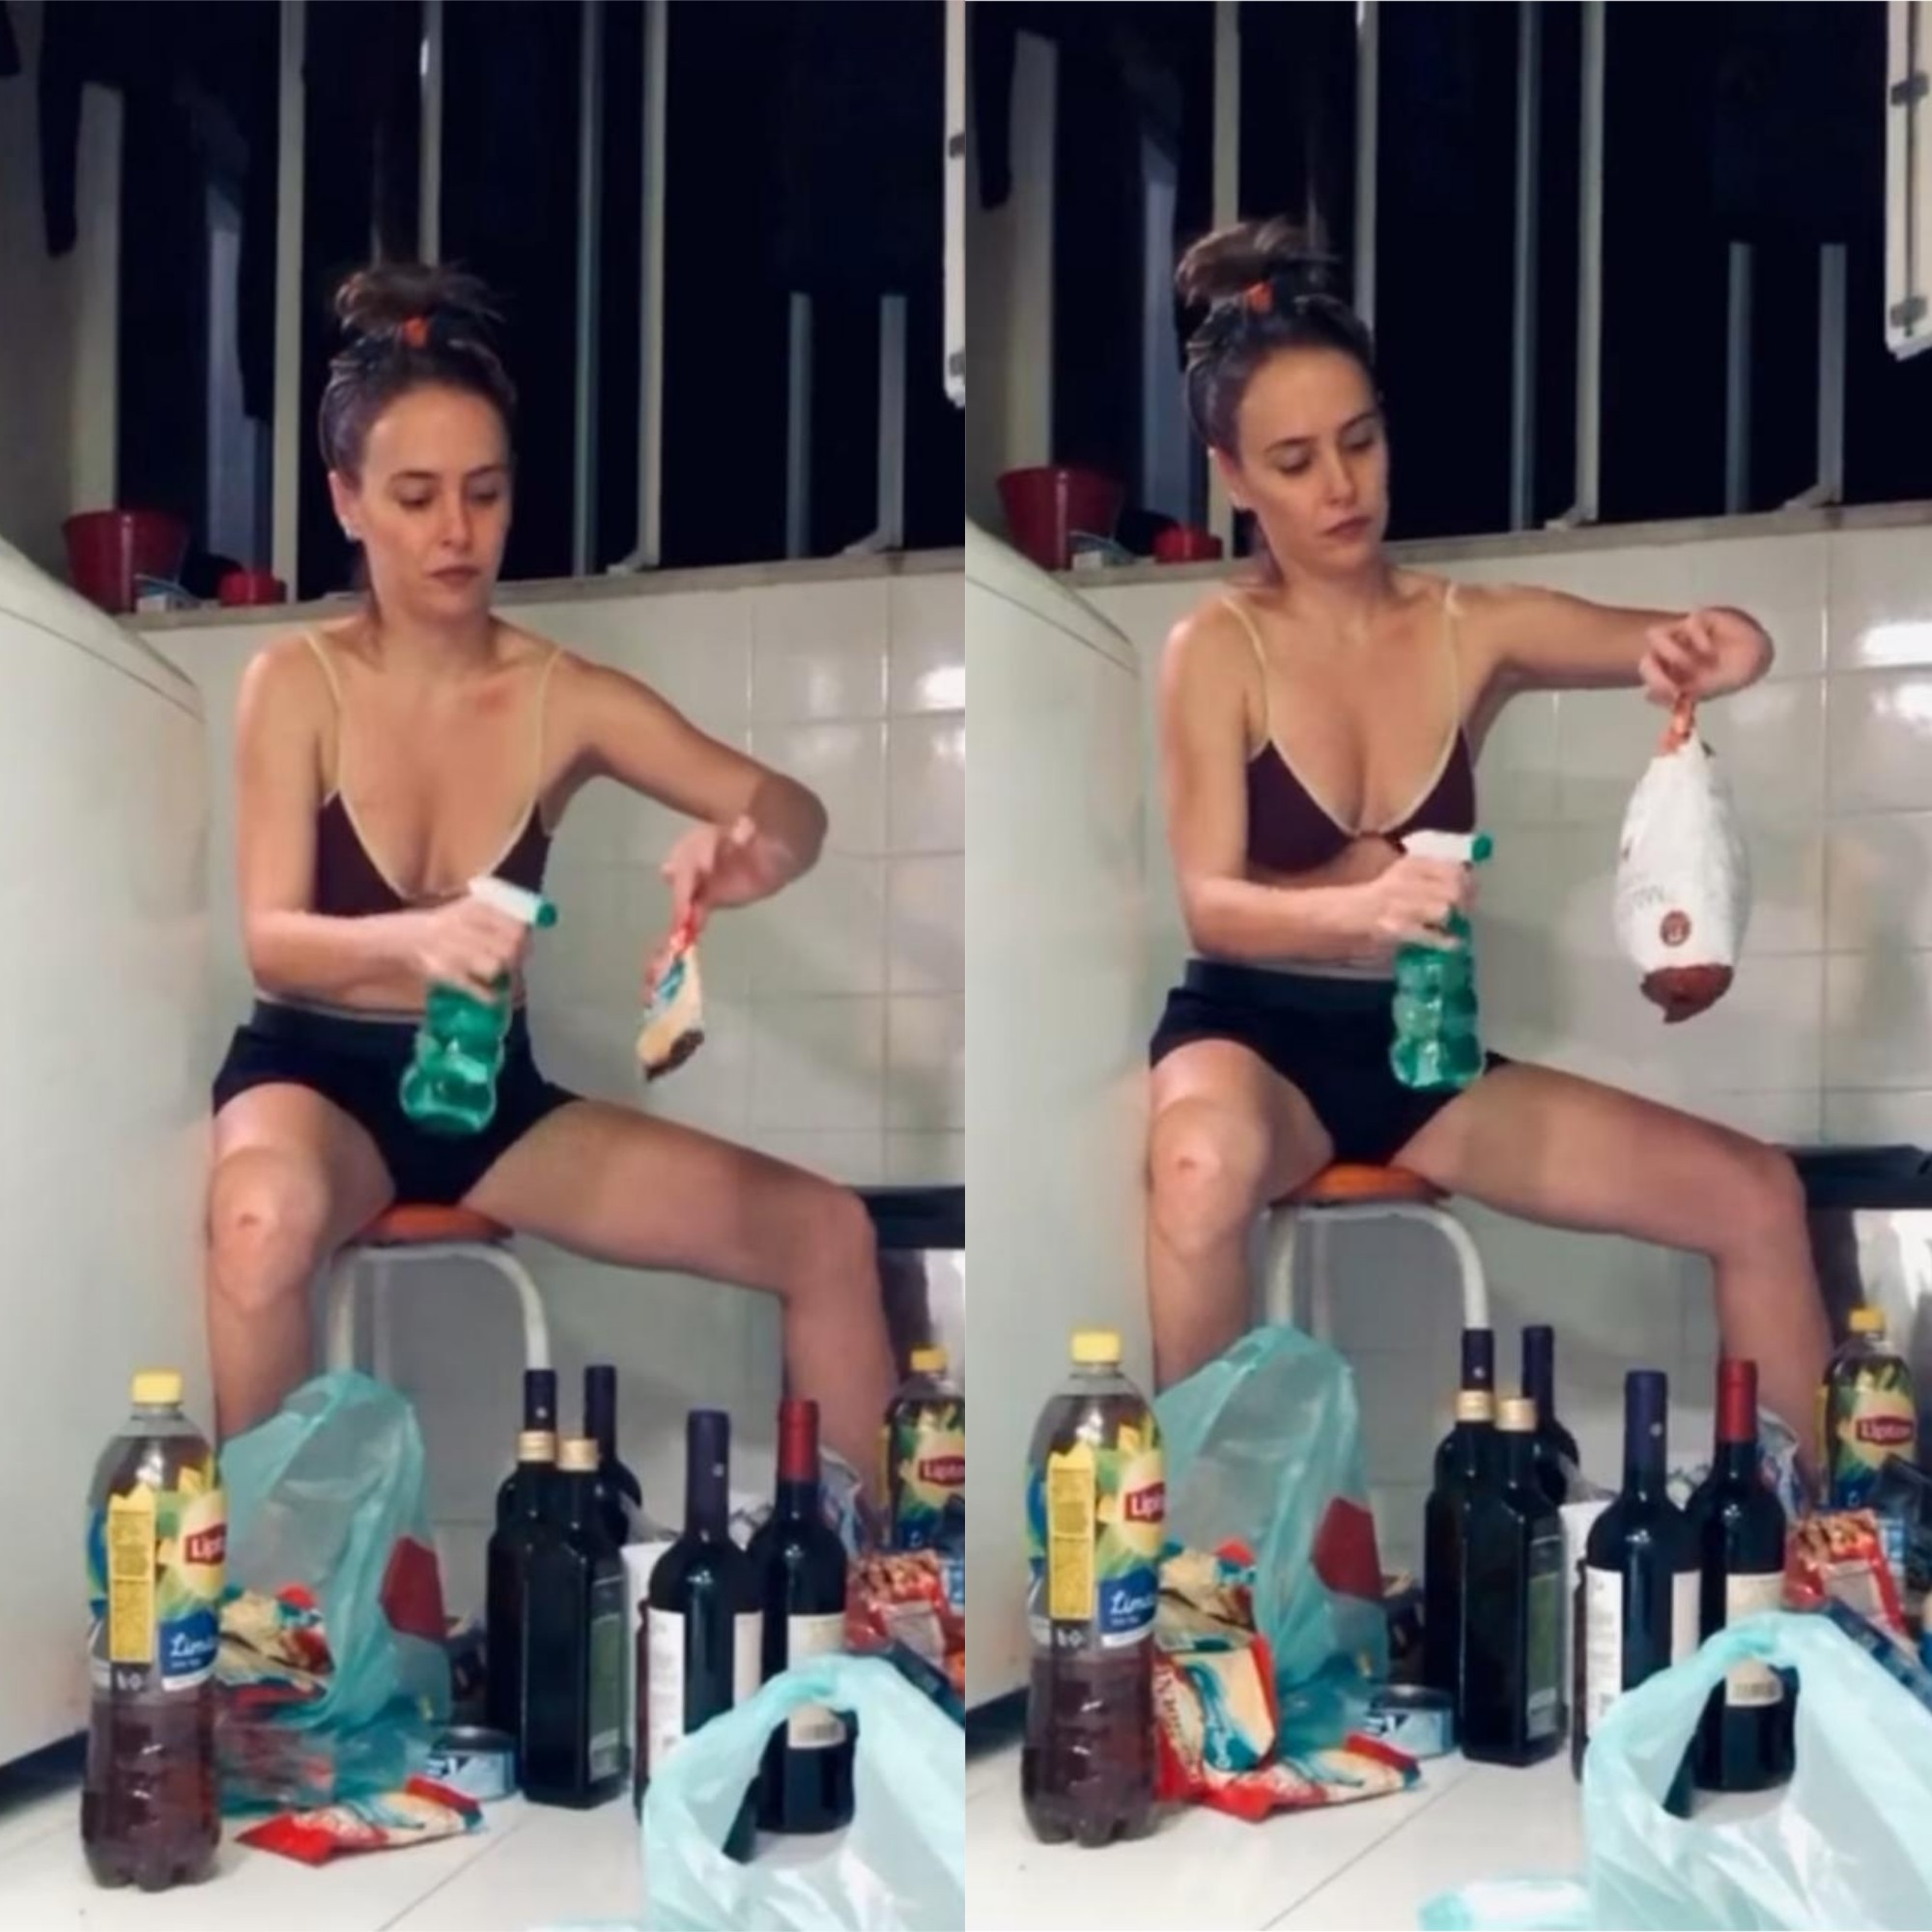 Fernanda Nobre higieniza as compras logo que chega em casa (Foto: Reprodução/Instagram)